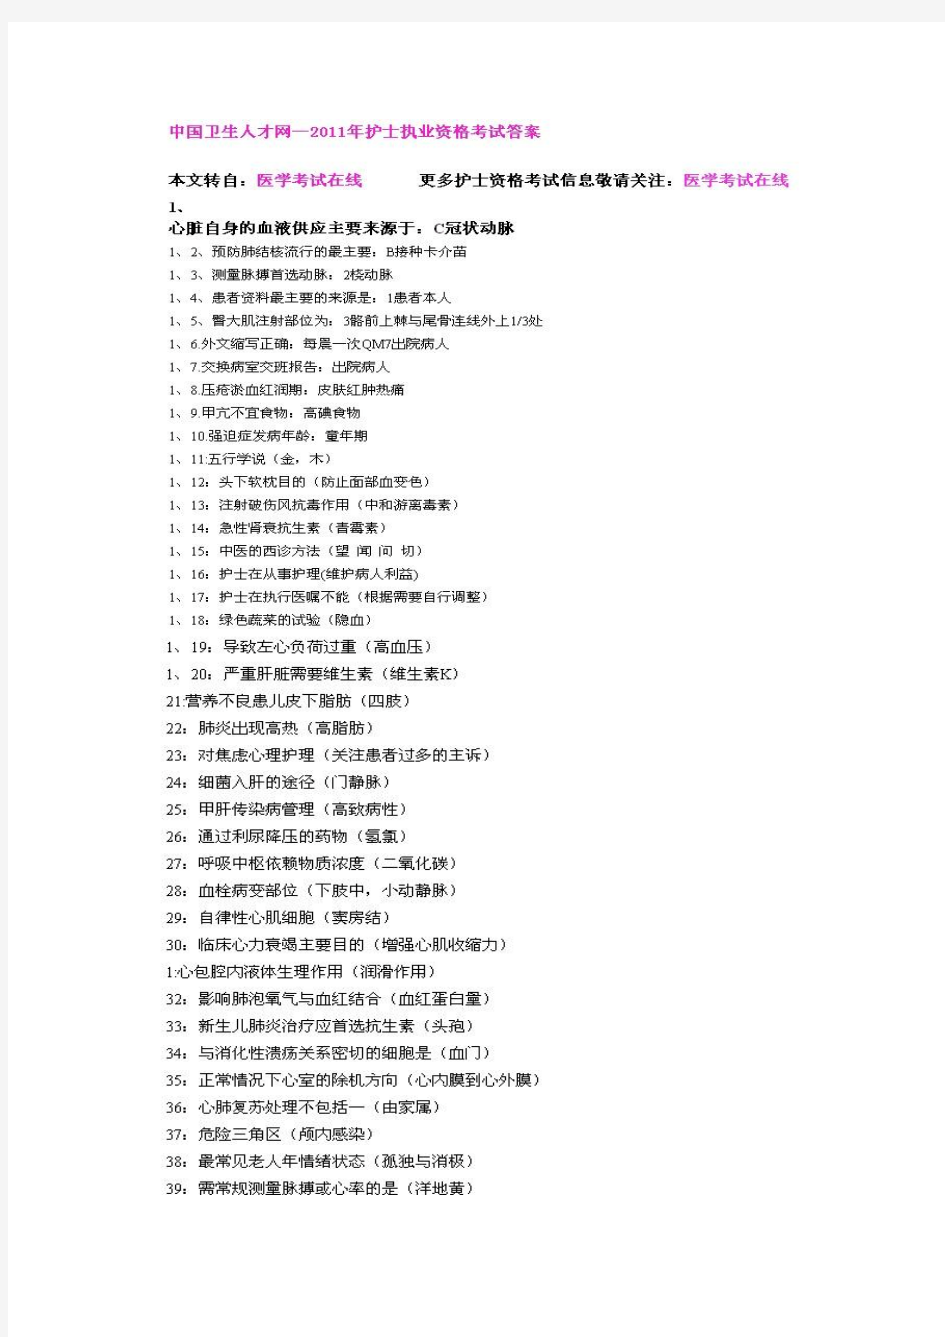 中国卫生人才网—2011年护士执业资格考试答案